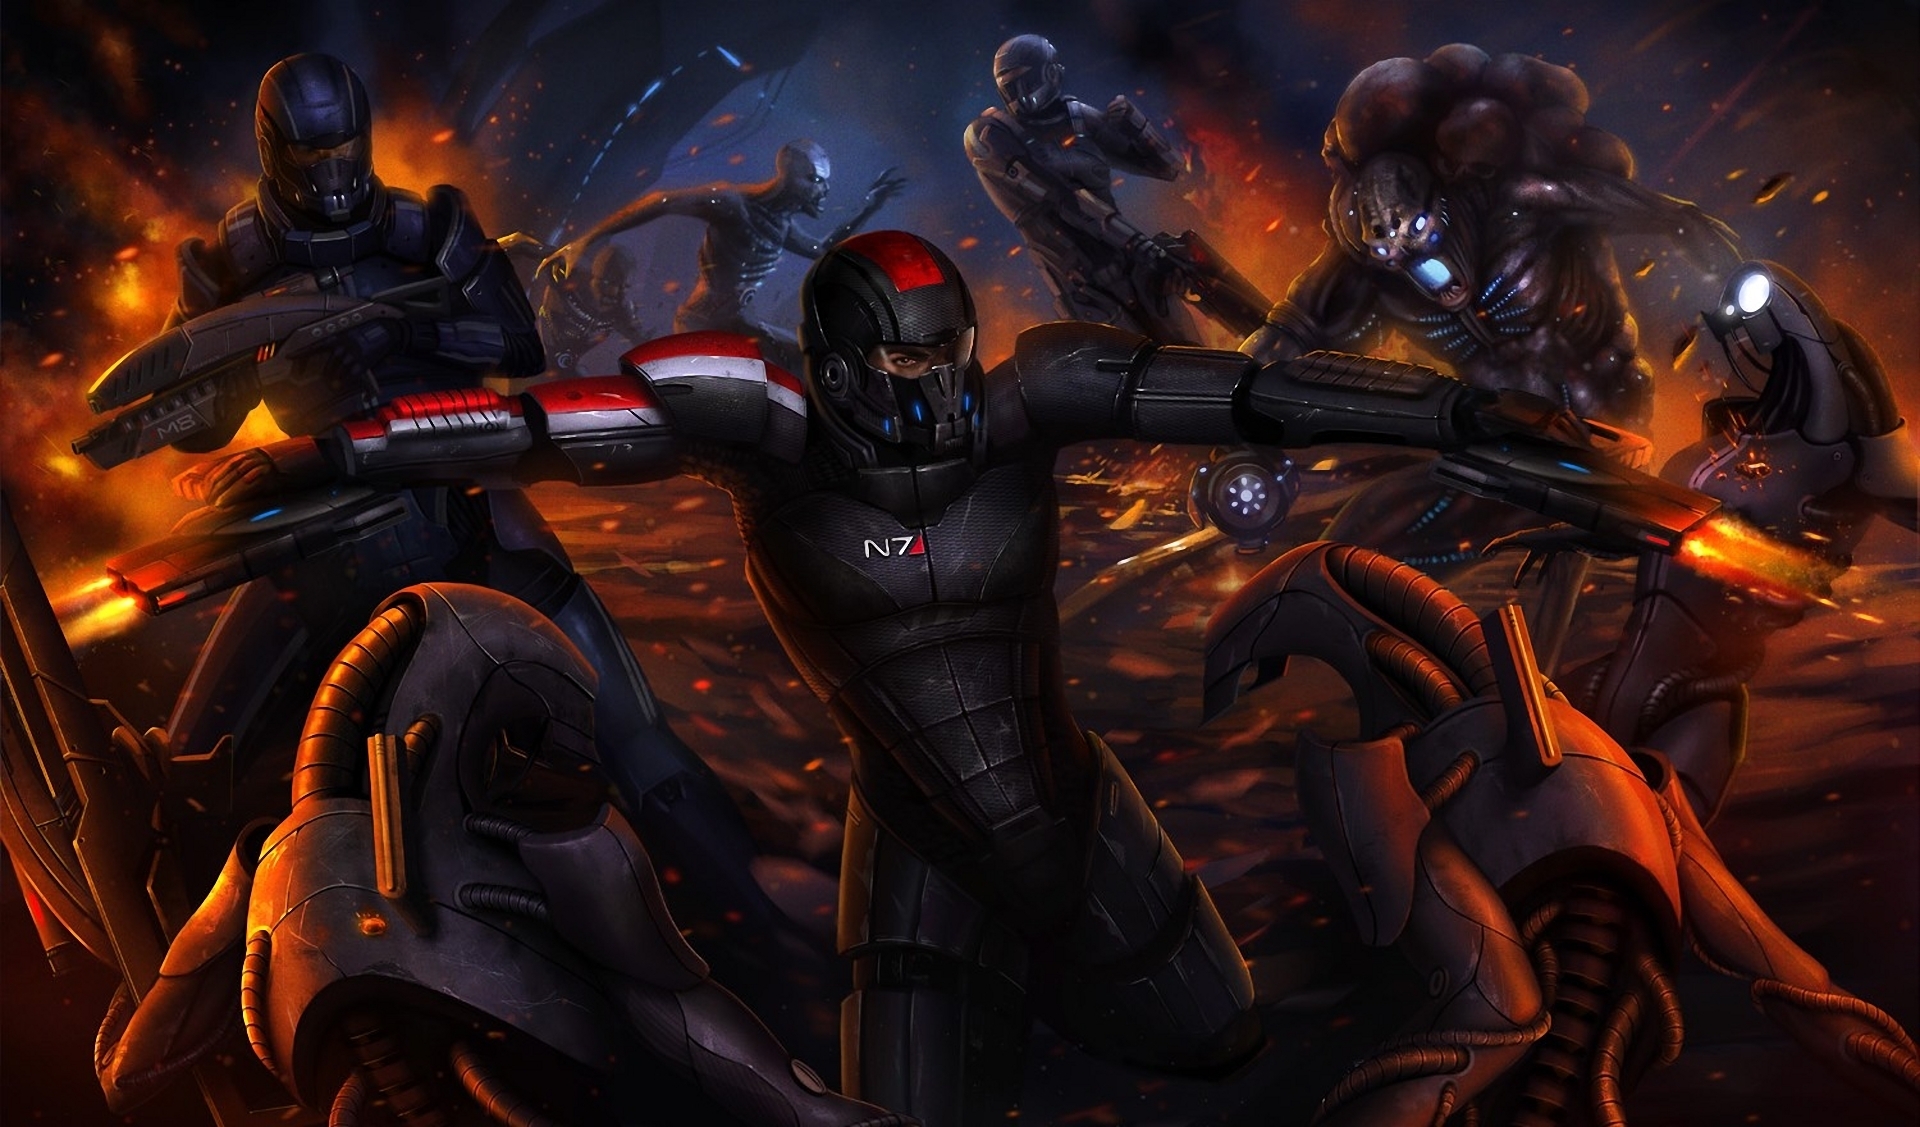 Free download wallpaper Mass Effect, Robot, Battle, Video Game, Mass Effect 3 on your PC desktop